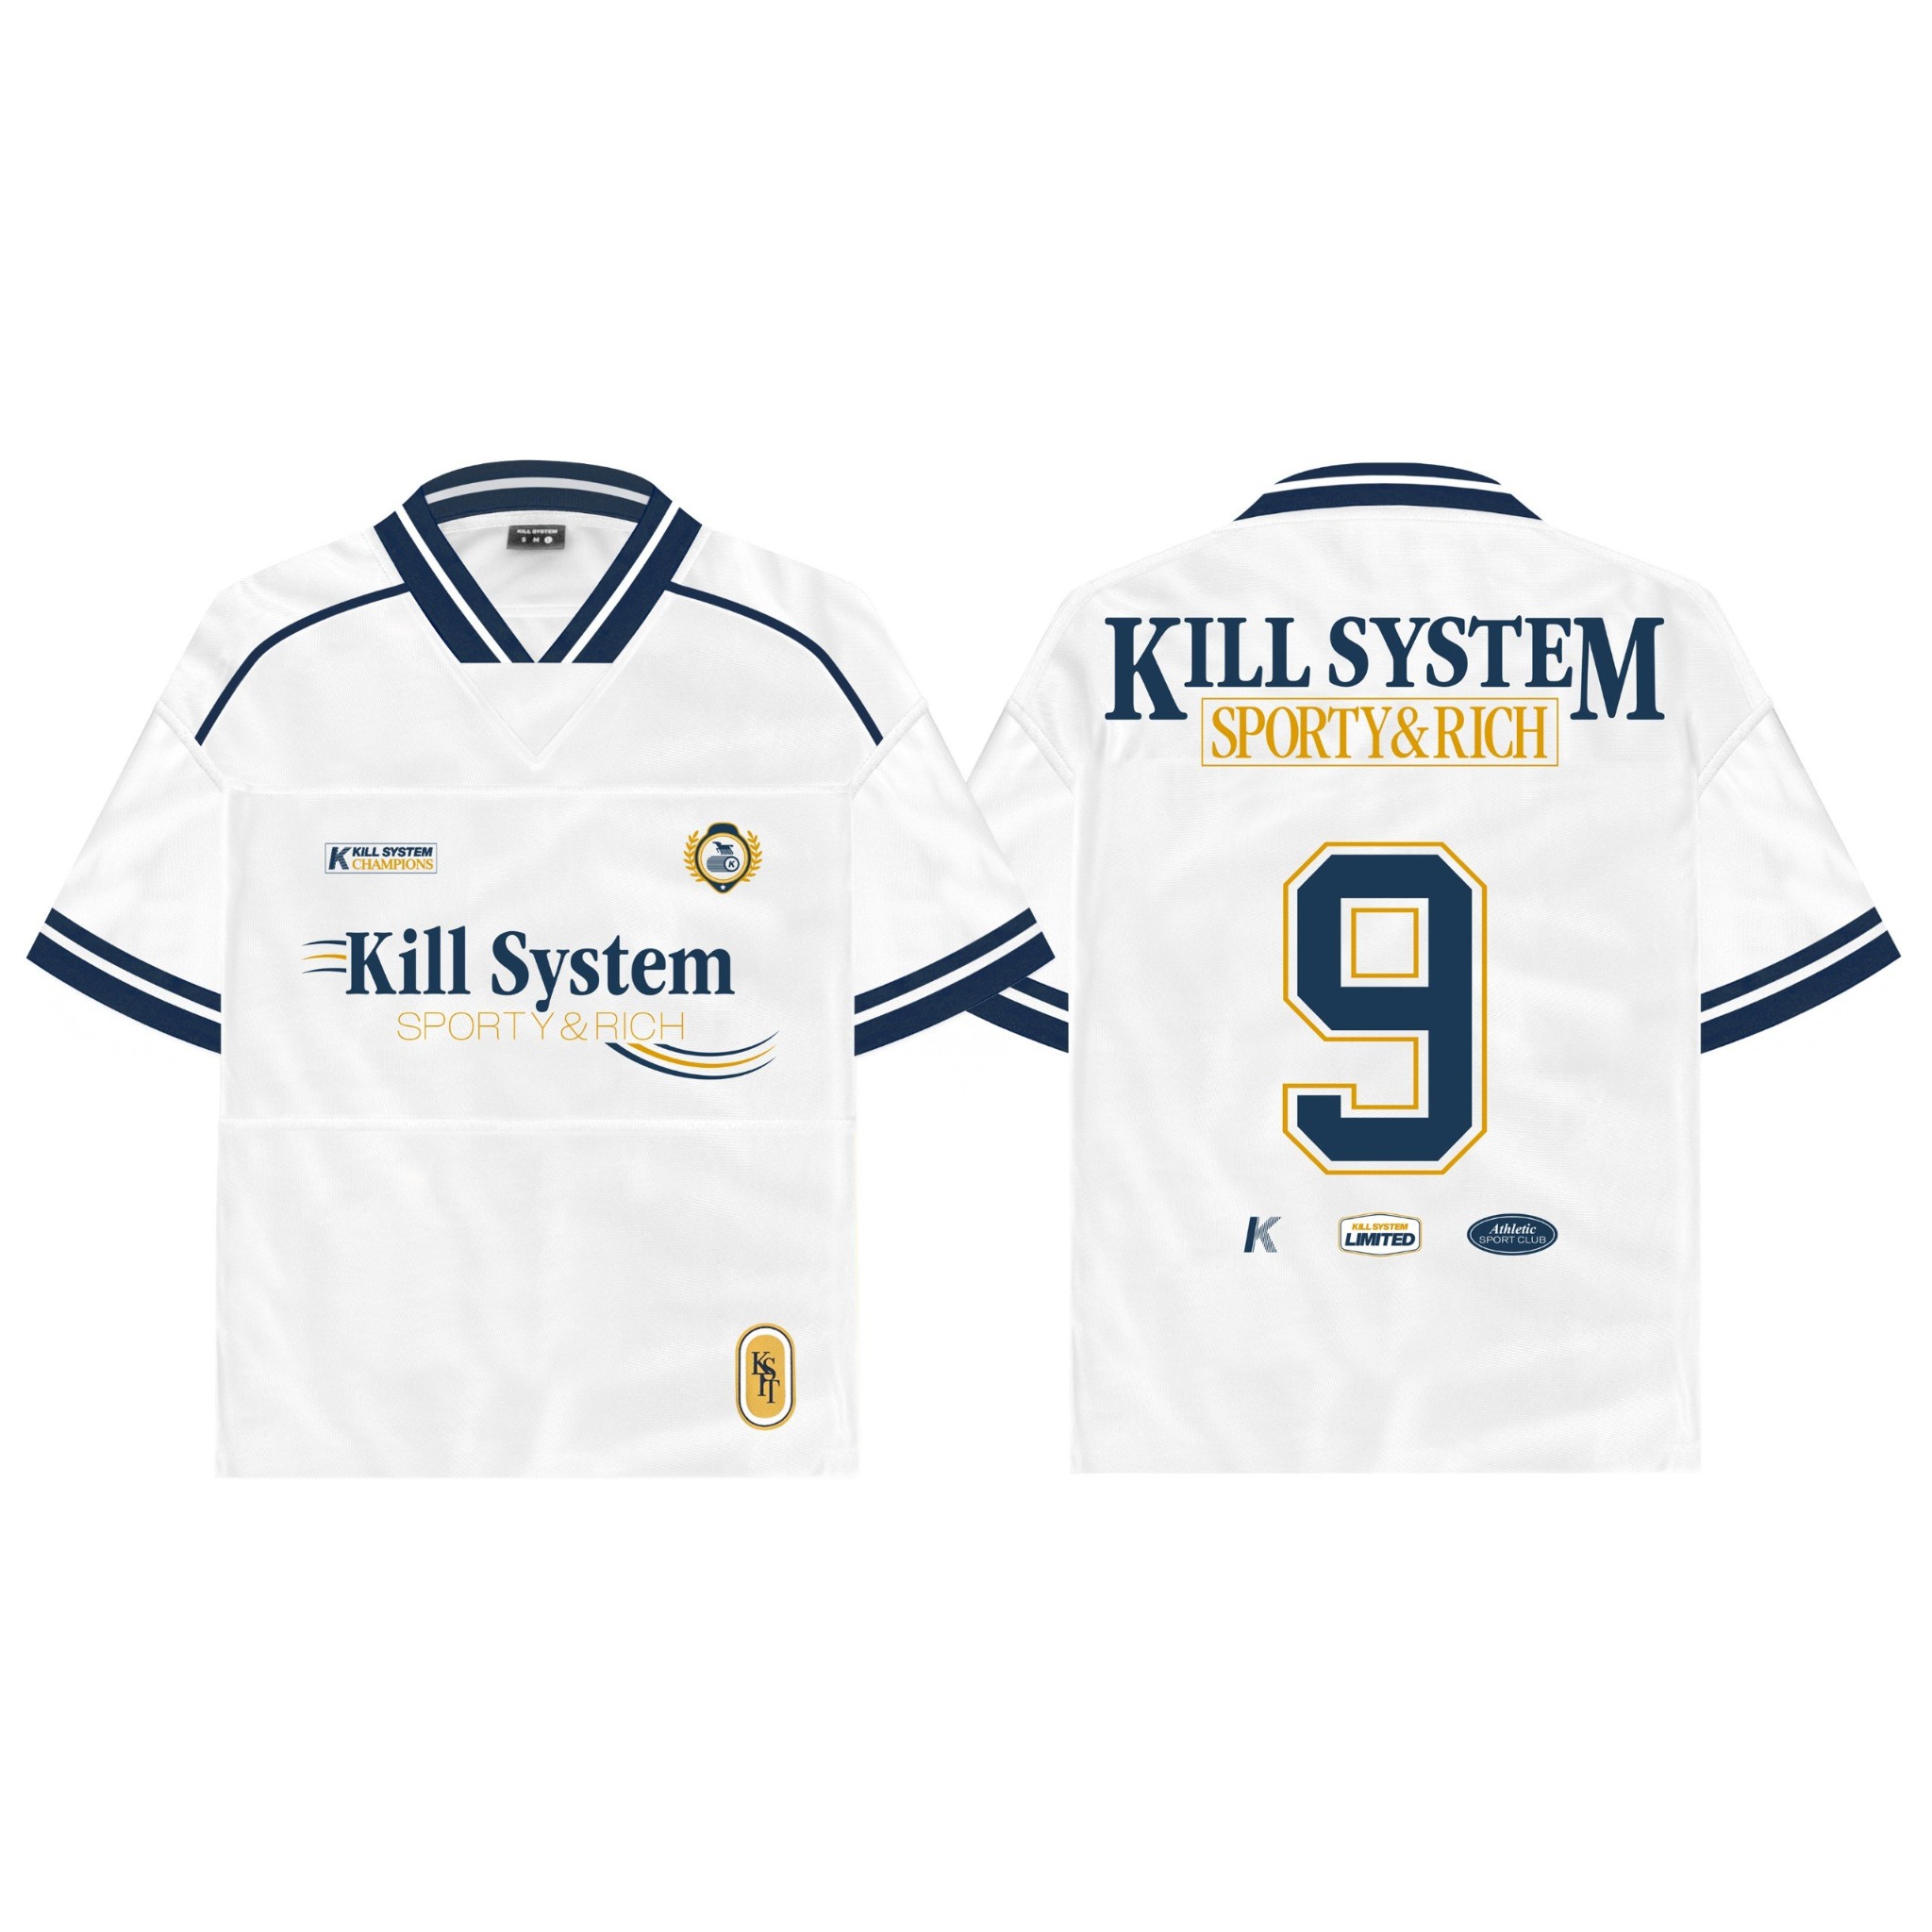  Áo jersey oversize Kill System Trắng xanh 9 cho nam và nữ 